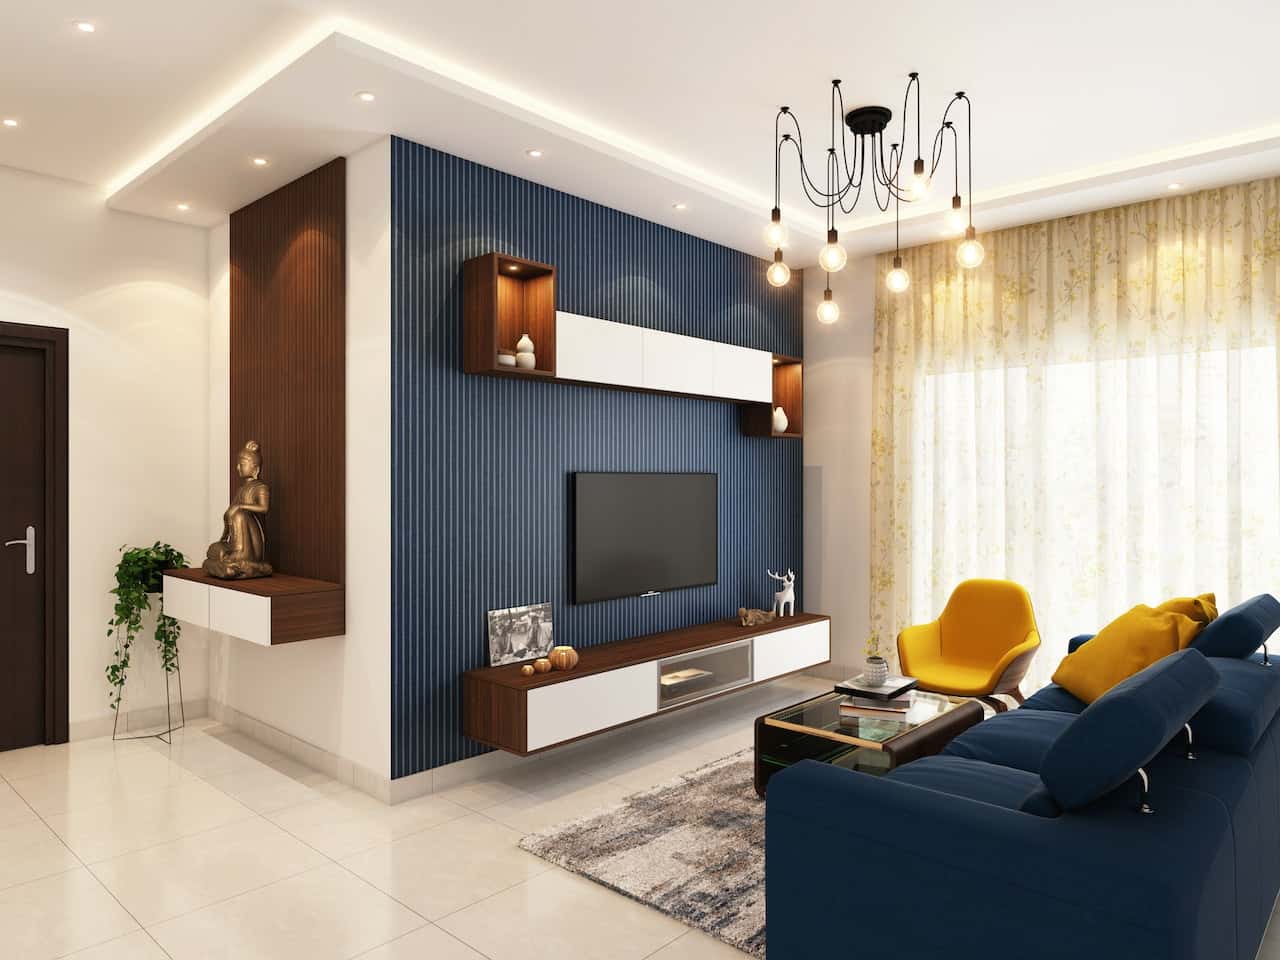 2bhk home interior Design mumbai, 2bhk interior design budget, | paradise  decor mumbai #2bhkinterior - YouTube